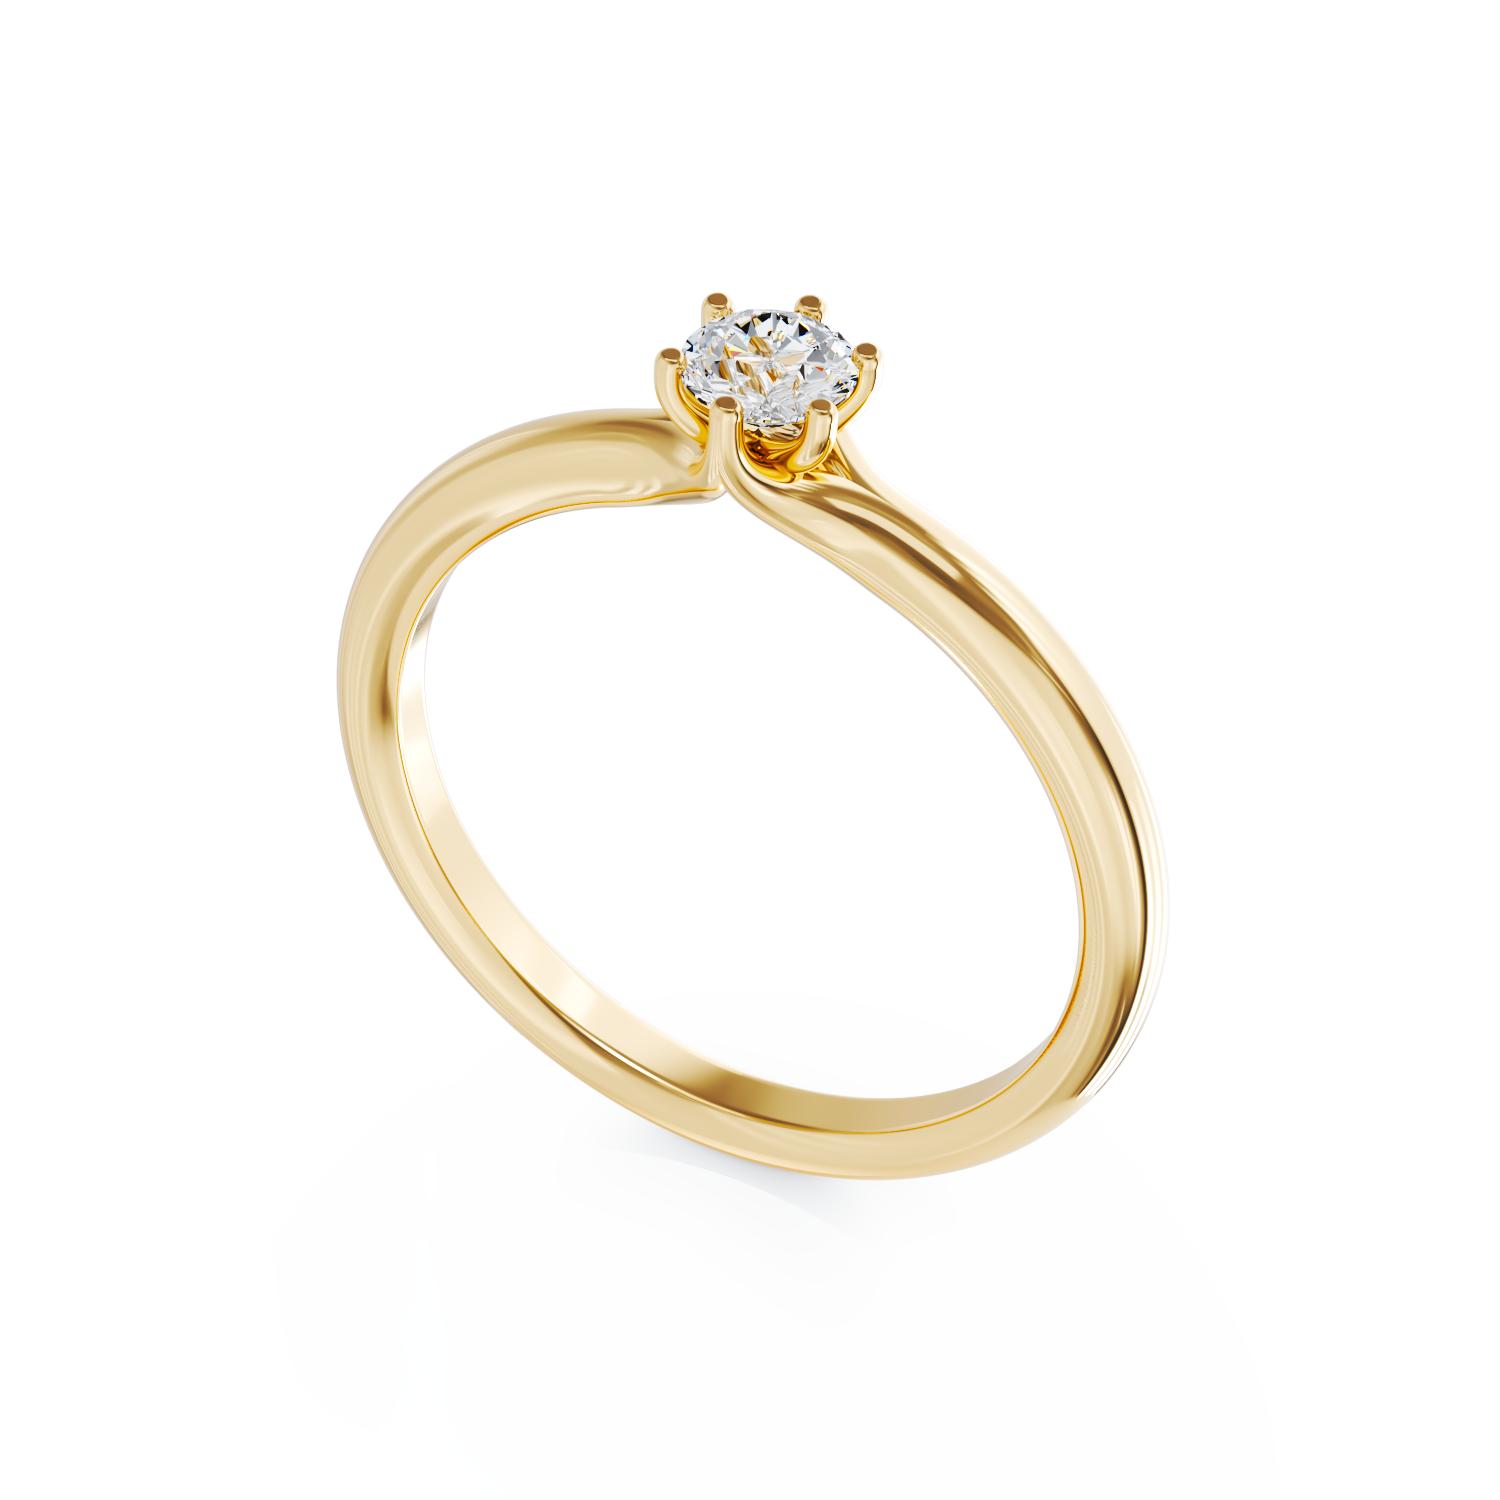 Eljegyzési gyűrű 18K-os sárga aranyból egy 0,25ct solitaire gyémánttal